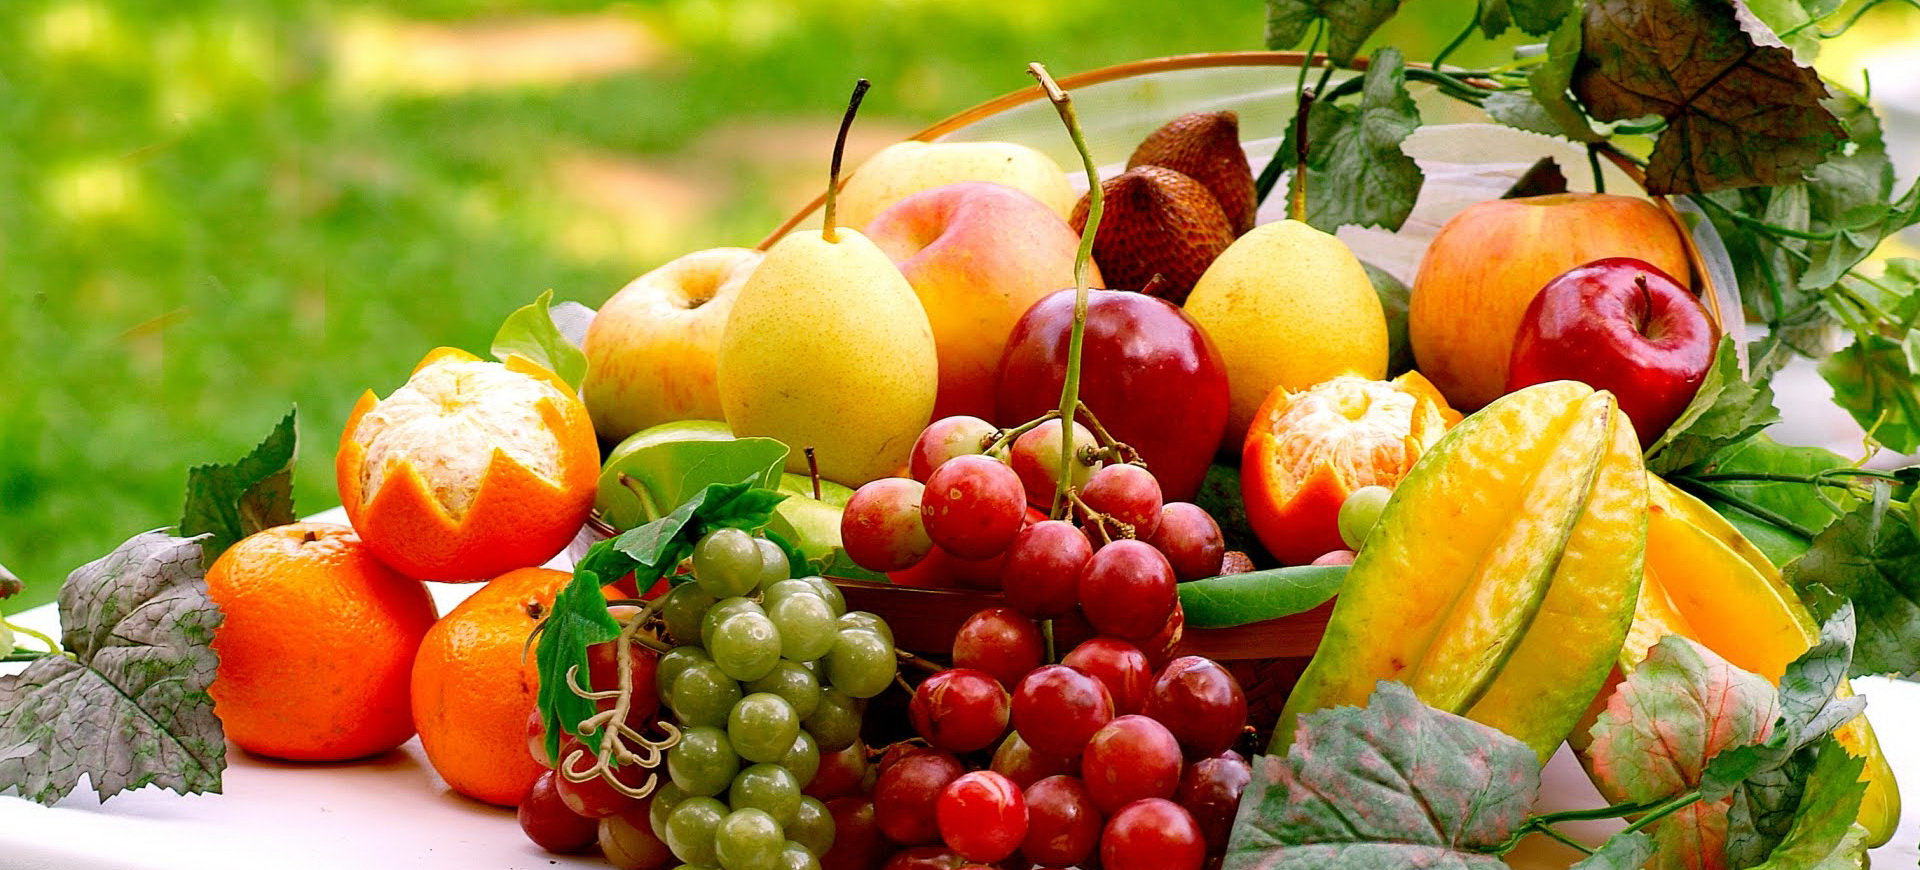 Какие фрукты принесут пользу во время диеты